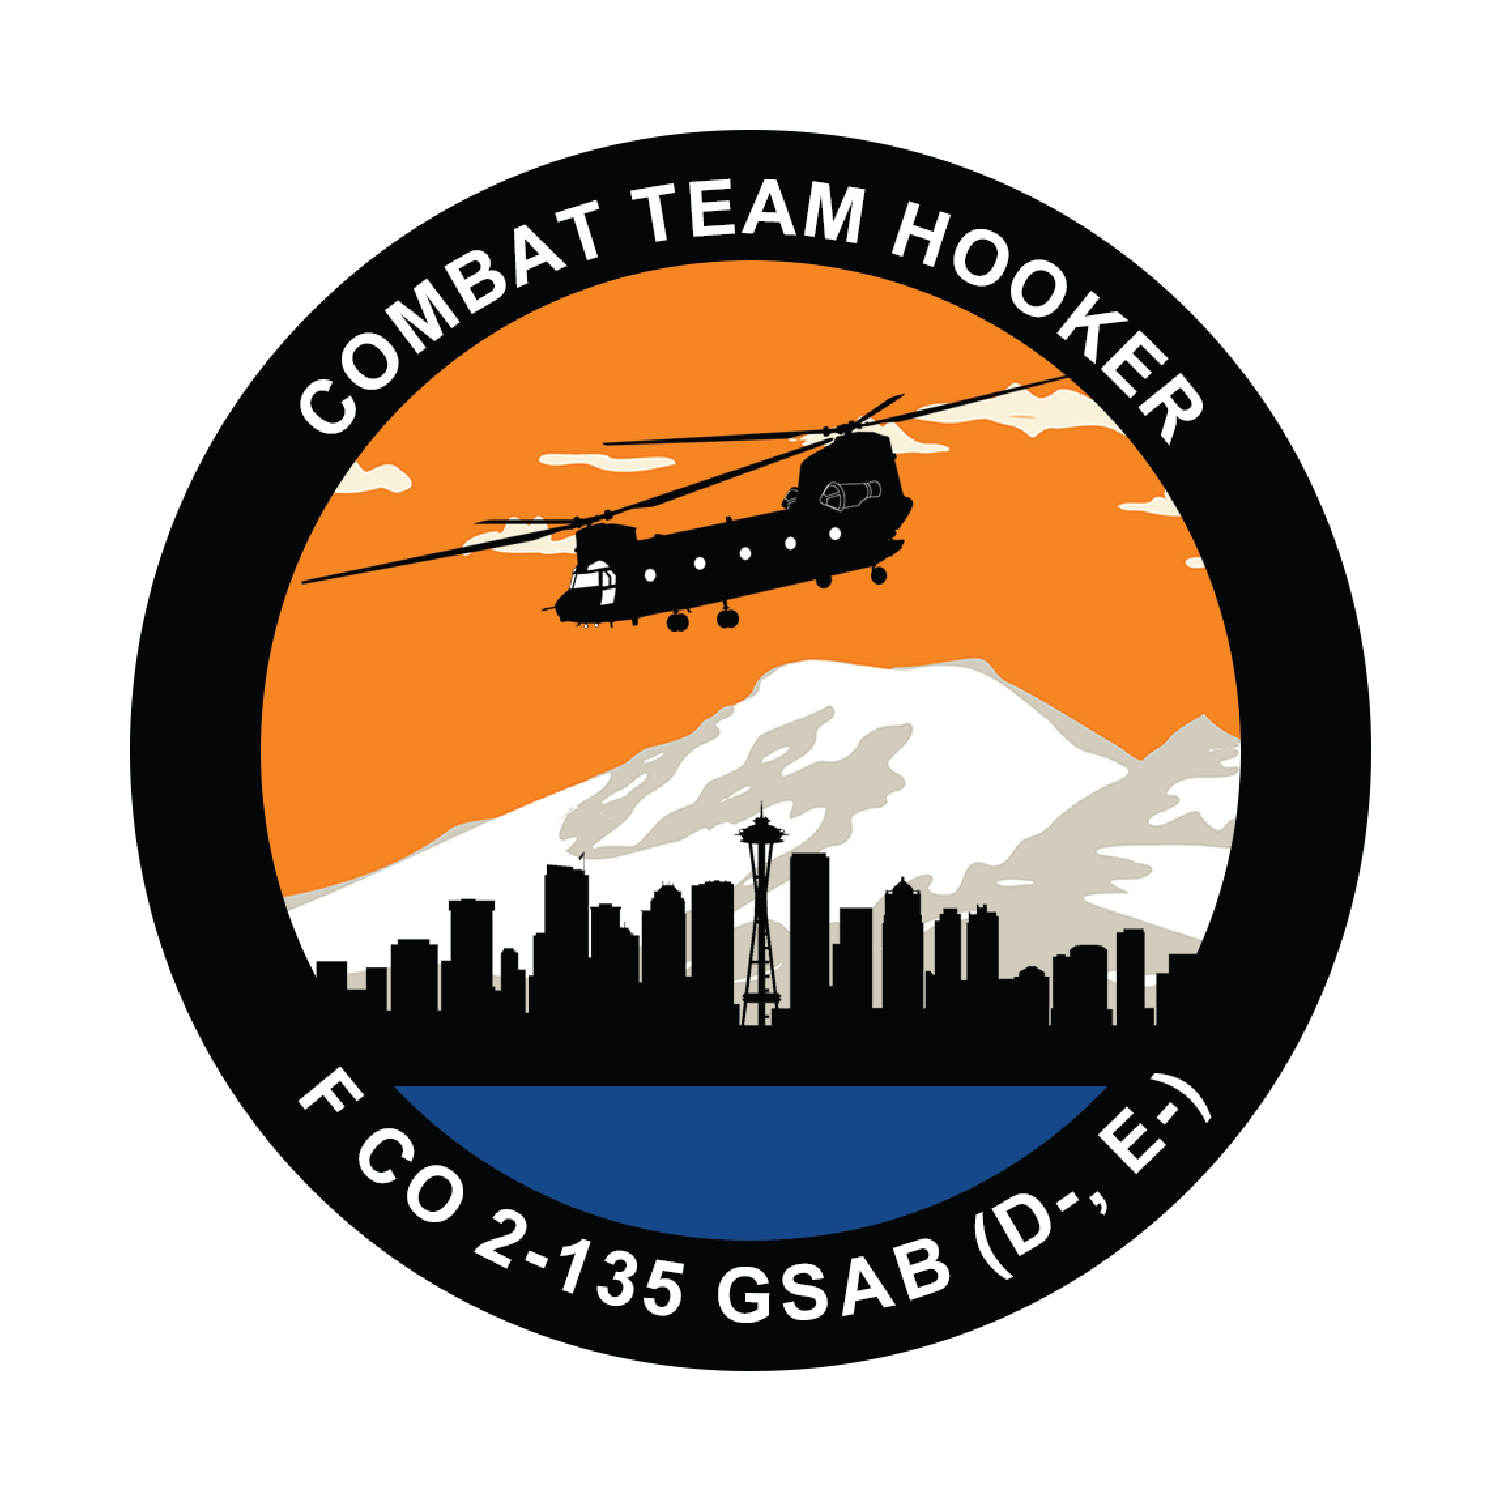 F Co, 2-135 GSAB (D-E-) "Combat Team Hooker"